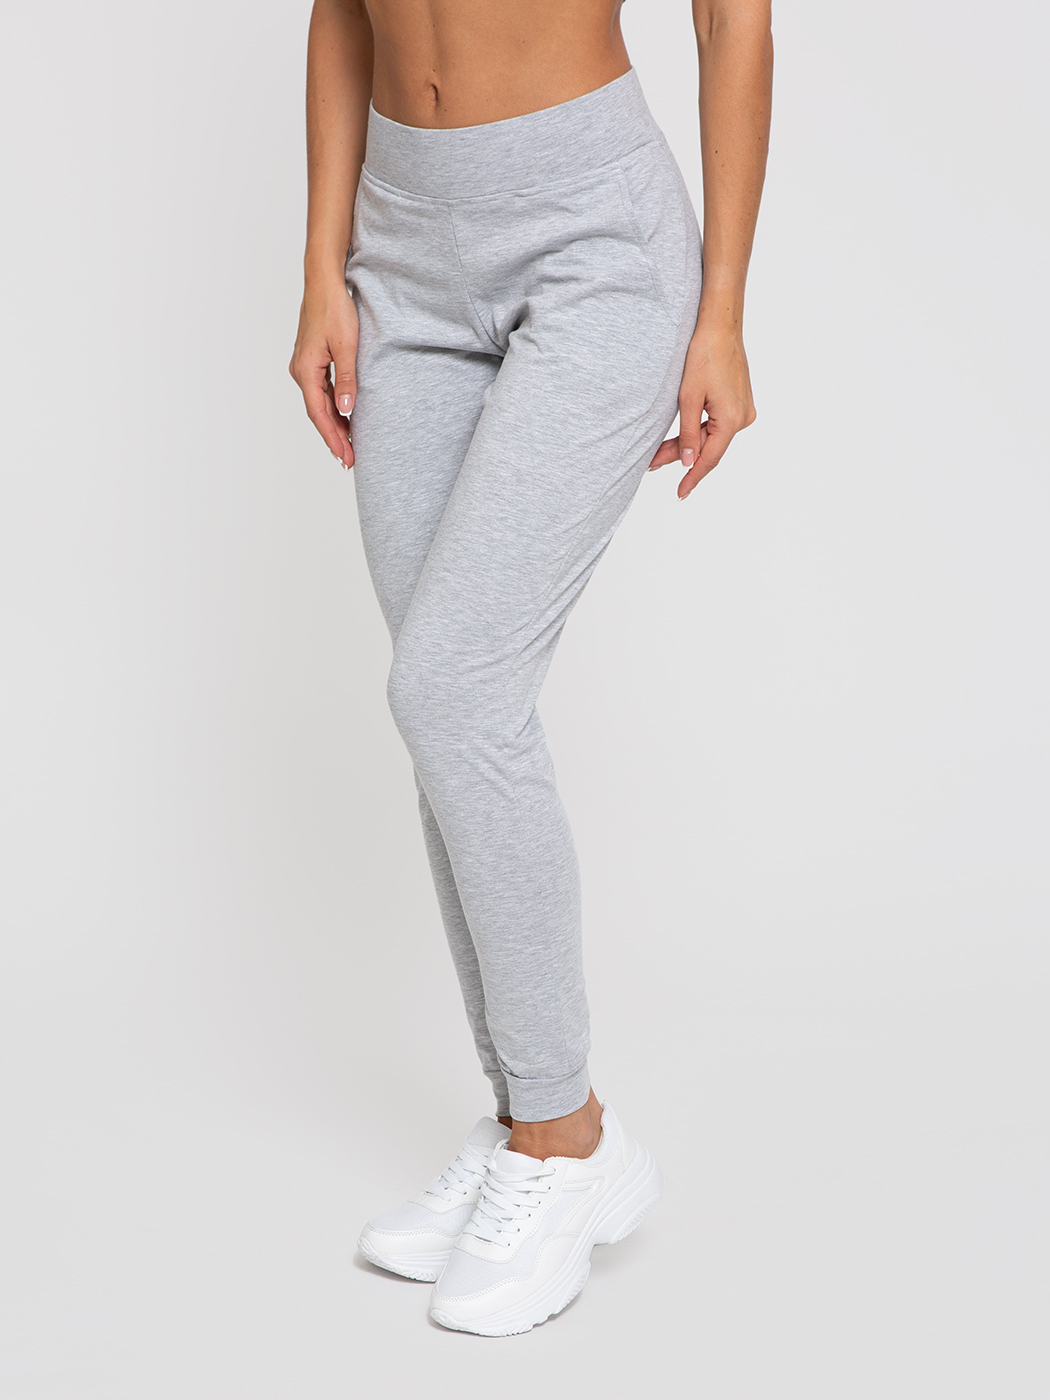 Спортивные брюки женские Lunarable kpan002_ серые M